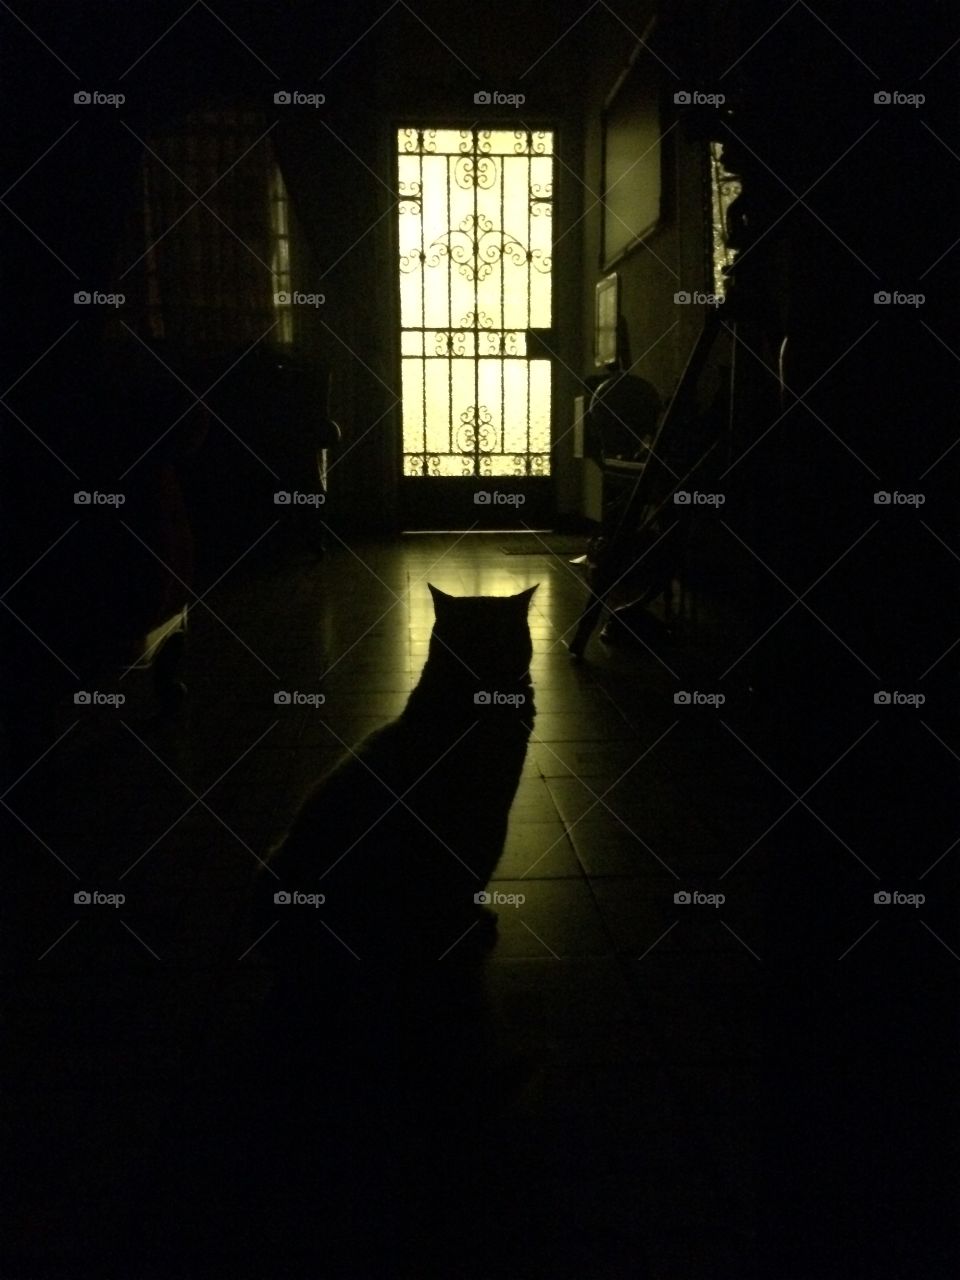 Cat silhouette in front of the door